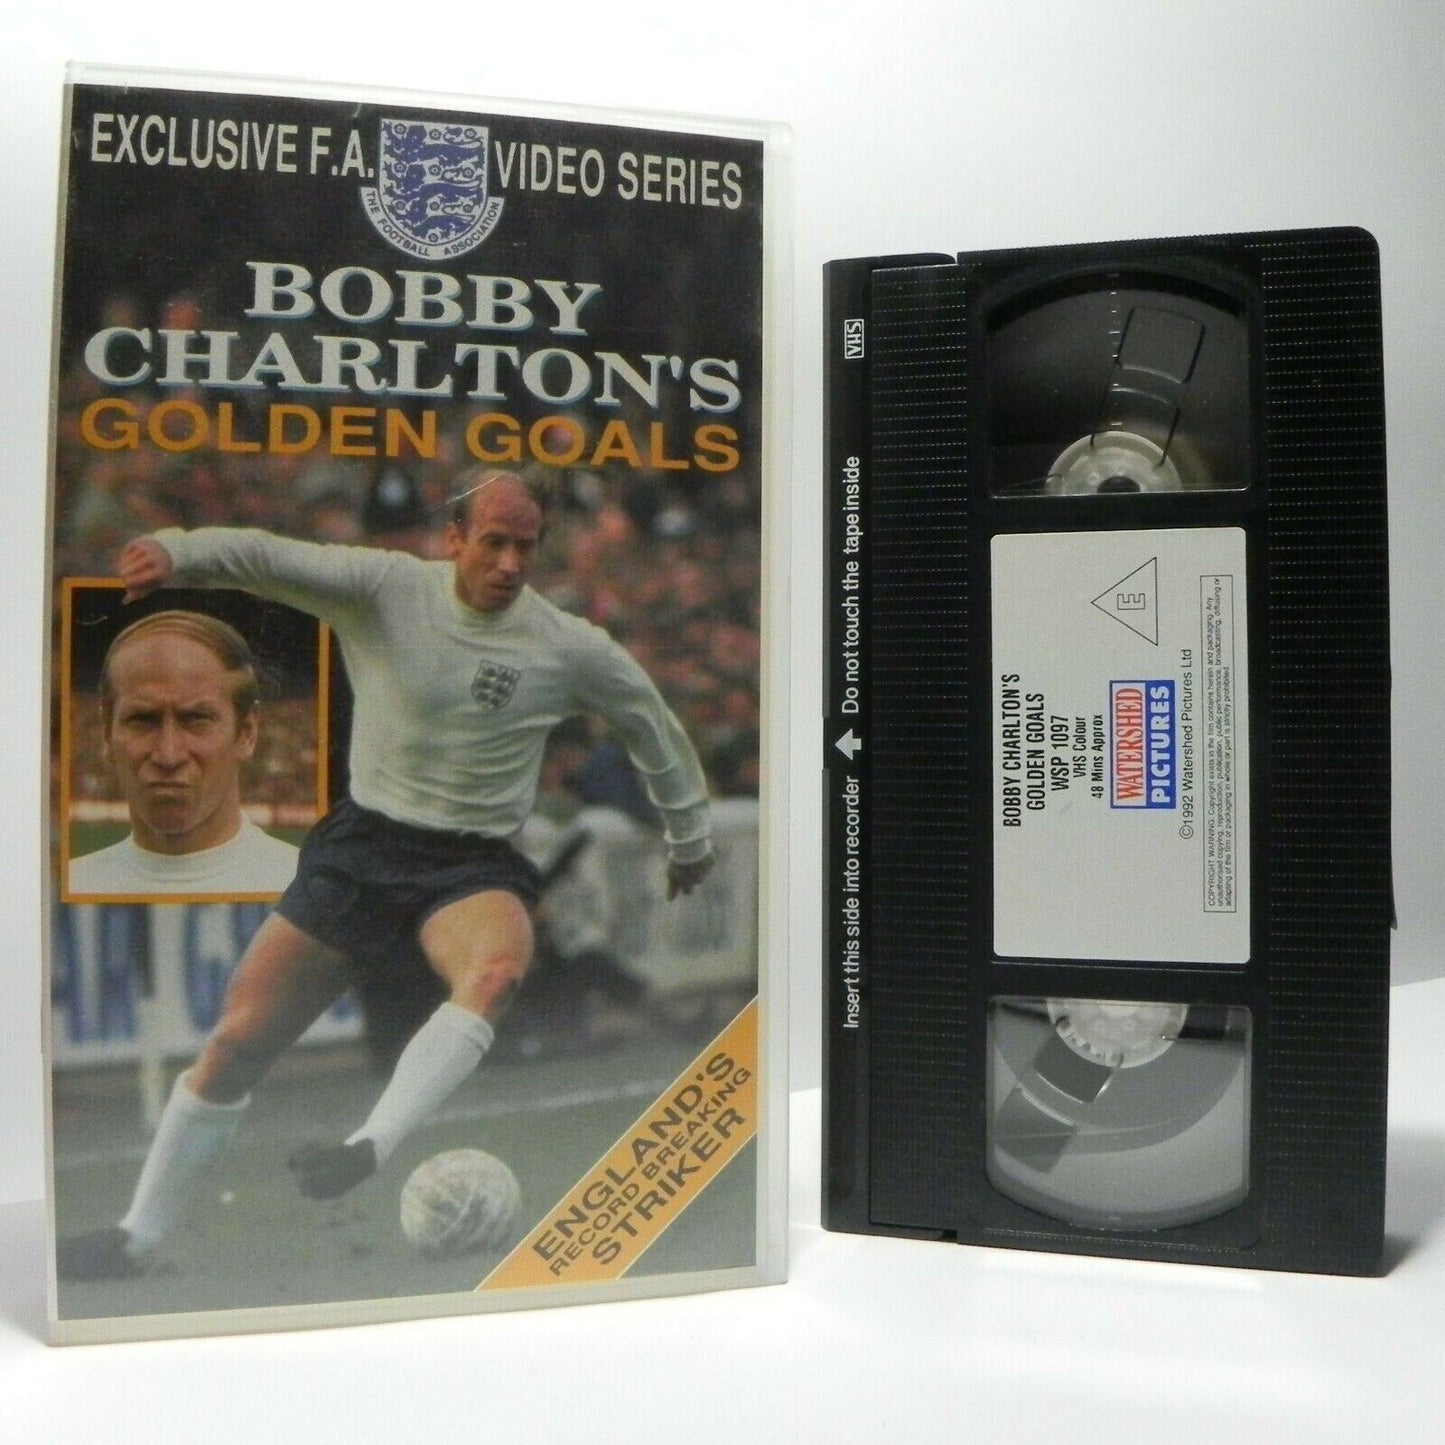 Bobby Charlton: Golden Goals - F.A. Video Series - Football Legend - Pal VHS-